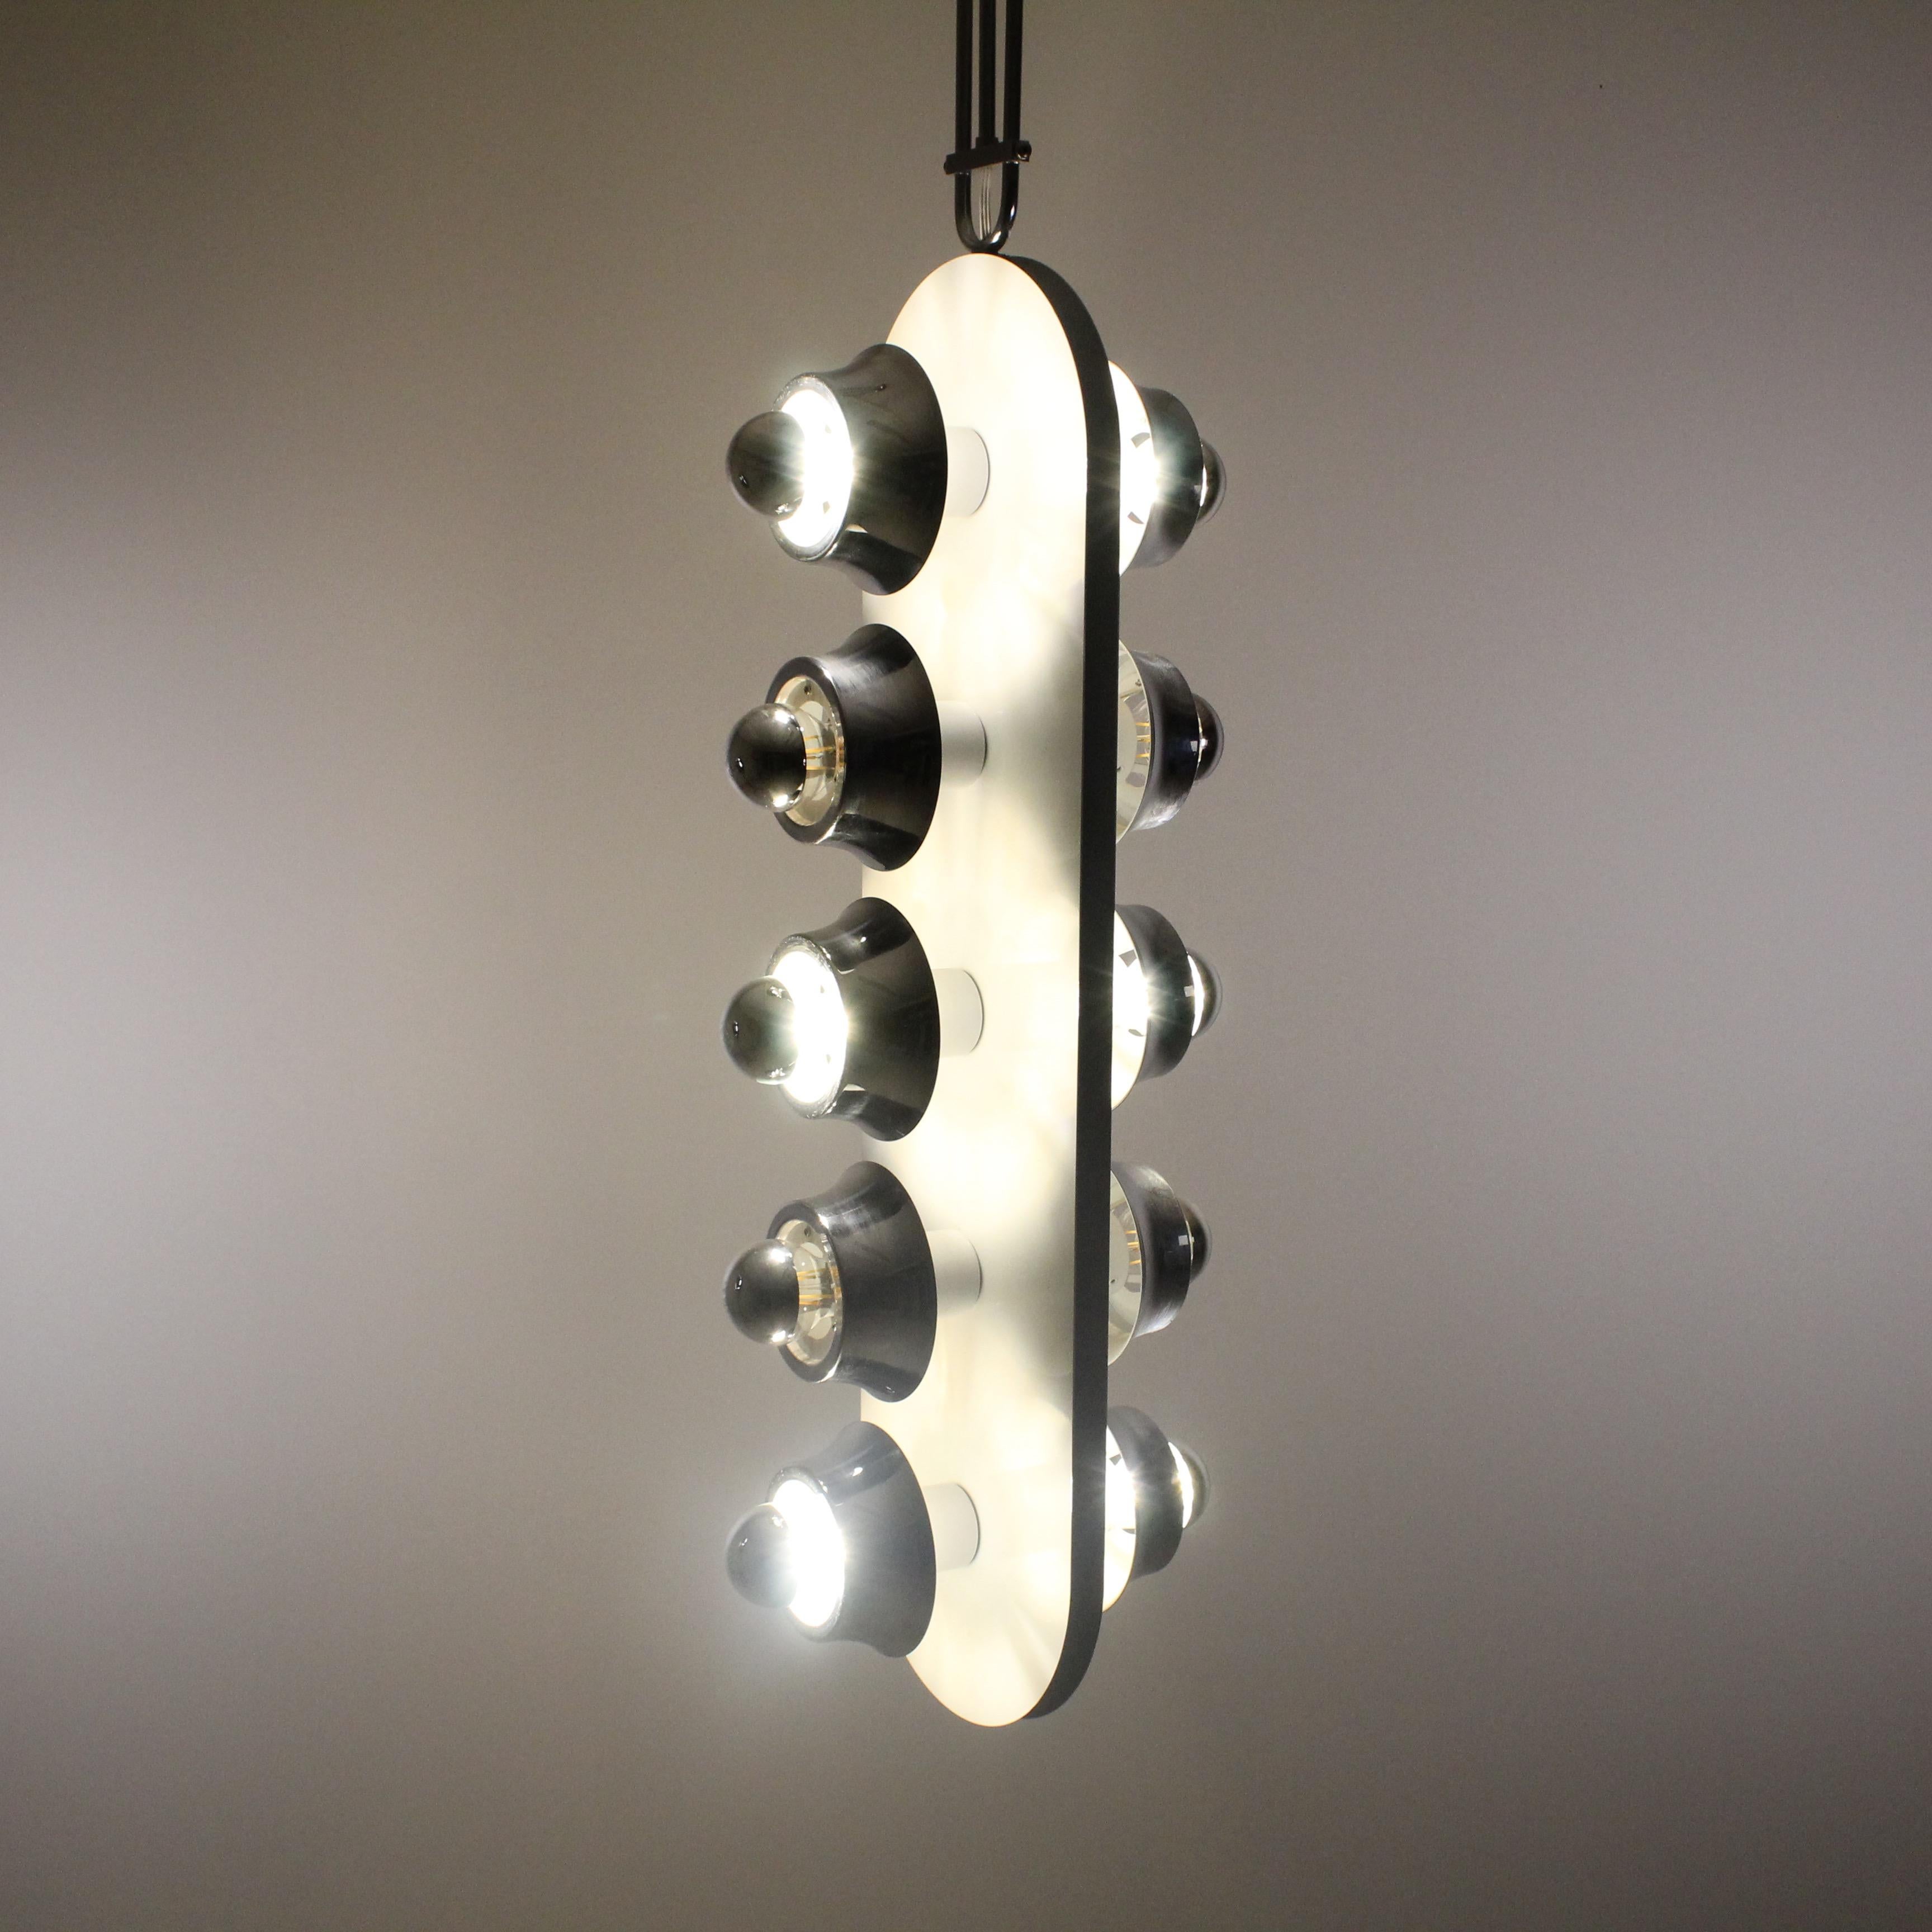 La lampe suspendue d'Esperia Productions, un design captivant des années 1970, témoigne de la fusion unique de la forme et de la fonction à cette époque. D'une esthétique résolument rétro, cette suspension dégage une impression de sophistication